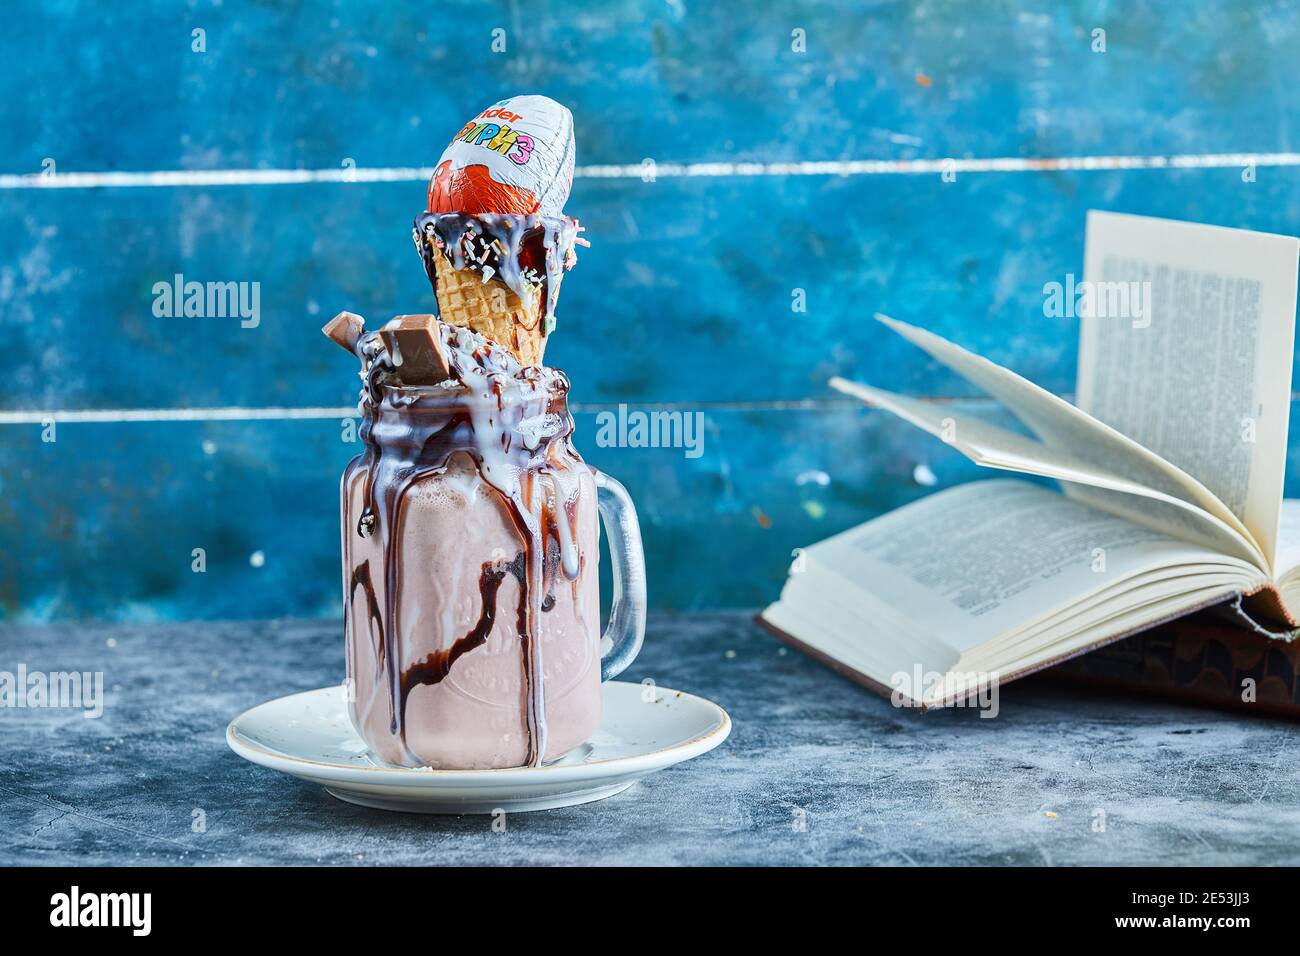 Frullato di cioccolato con barretta di cioccolato, sorpresa di kinder, cono gelato sul piatto bianco Foto Stock